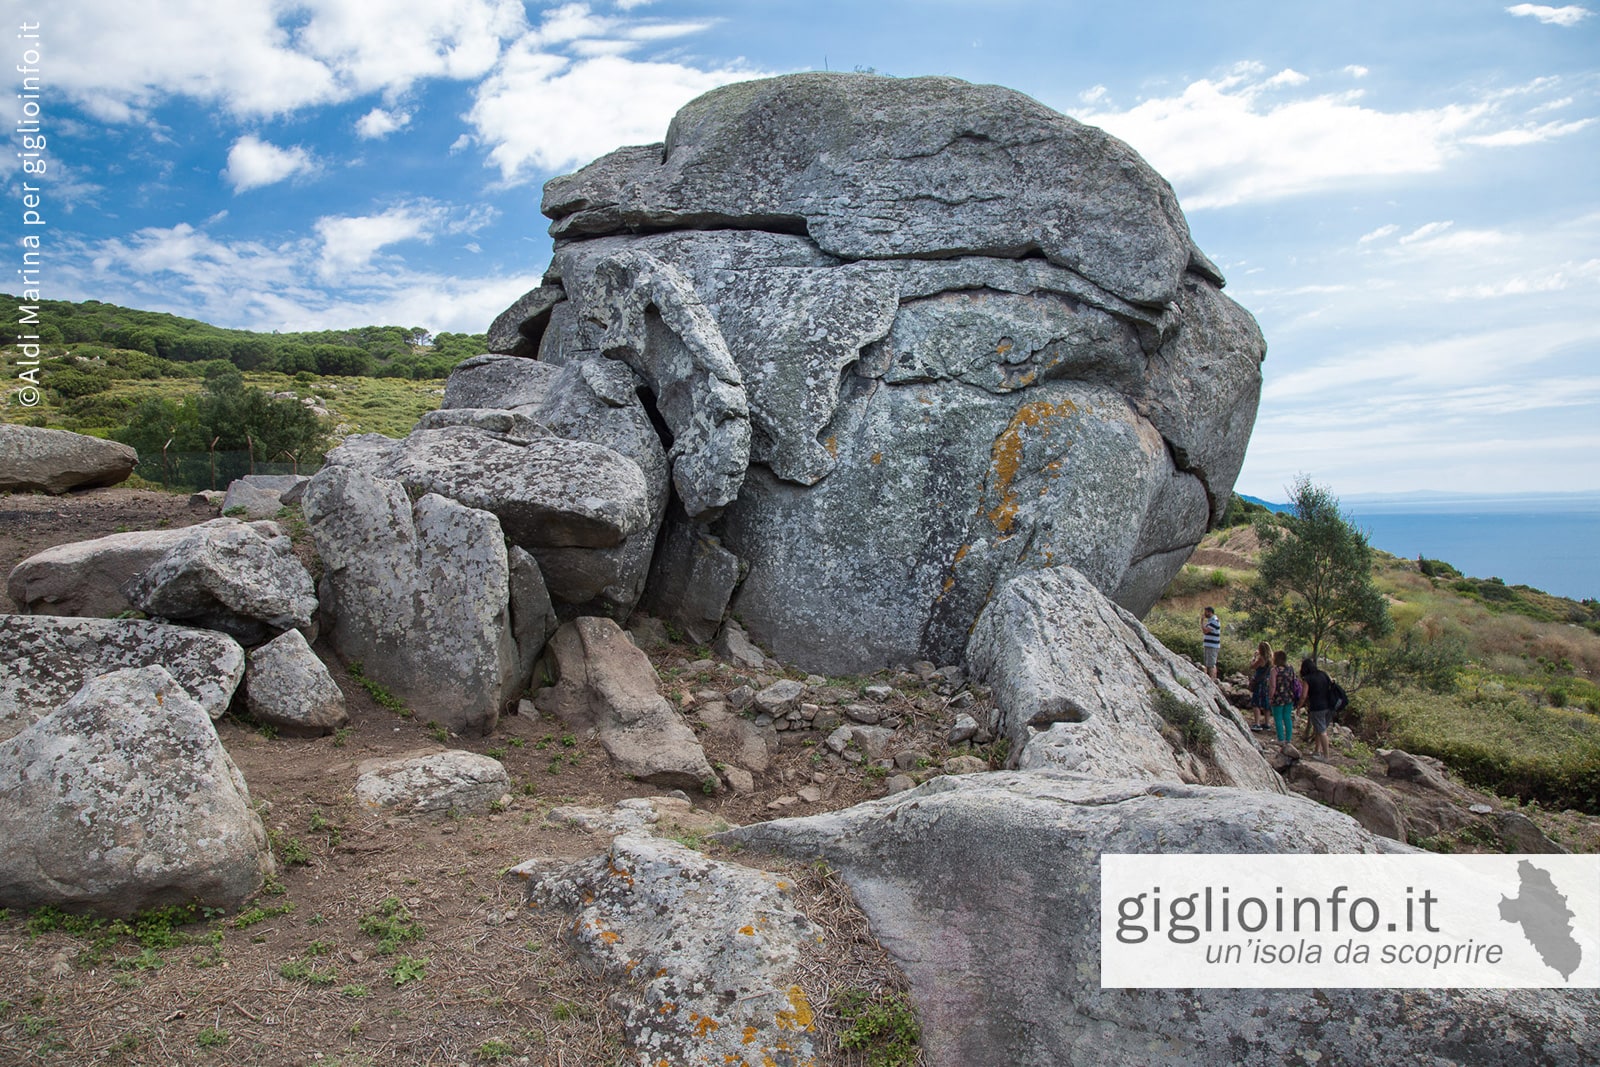 La Cote Ciombella - Sito Megalitico all'Isola del Giglio